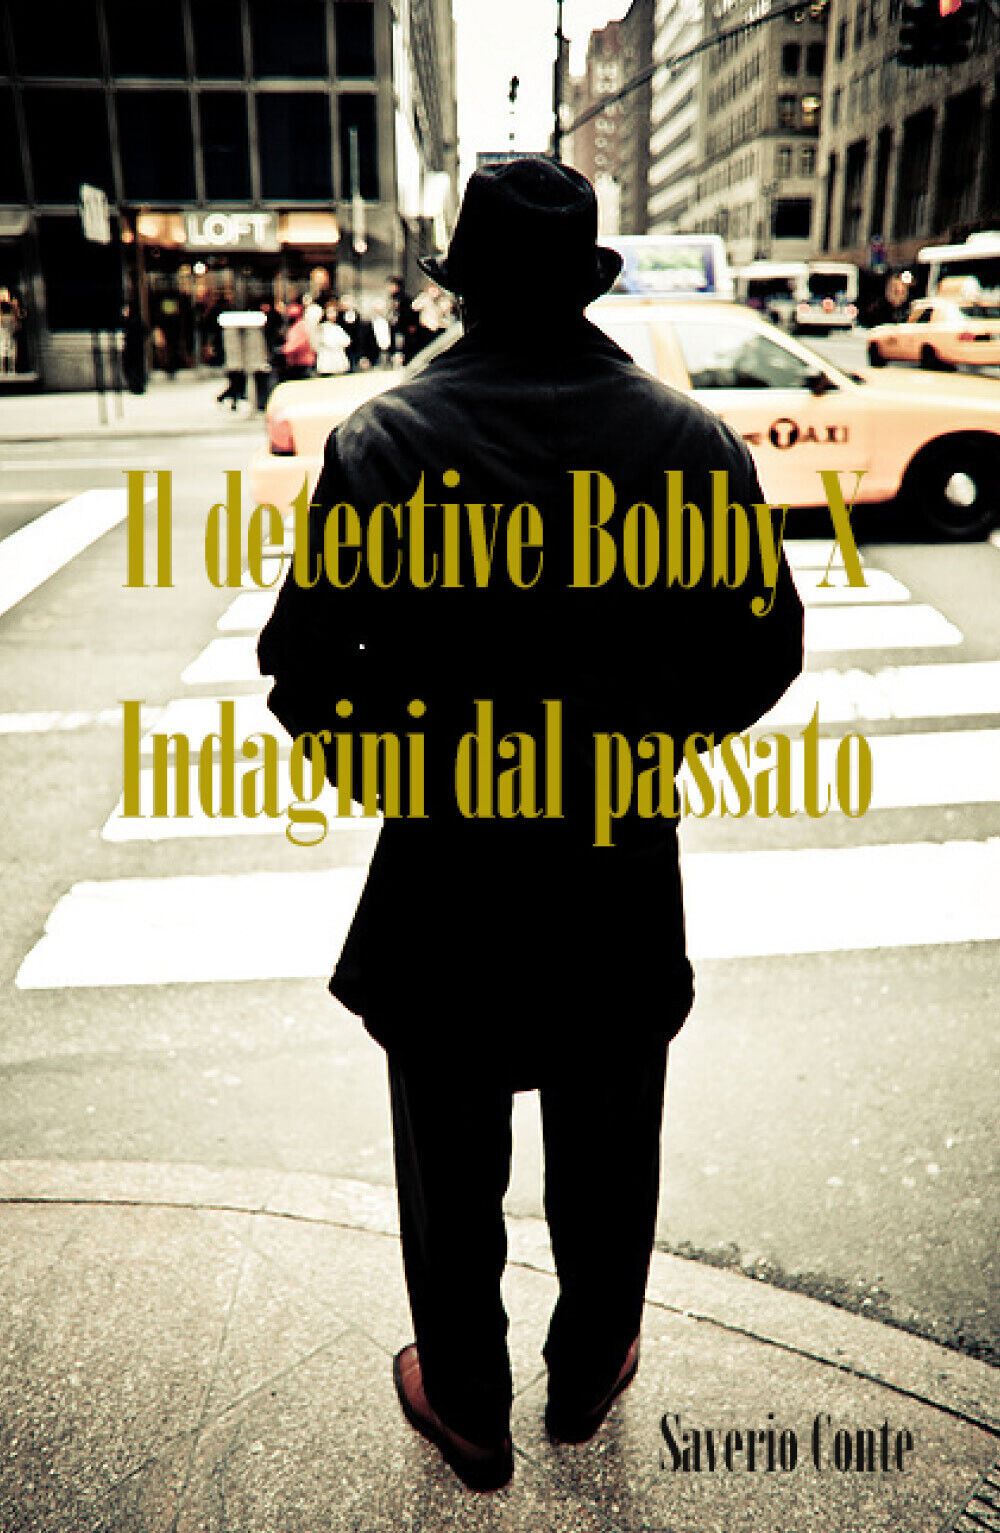 Il detective Bobby X - Indagini dal passato  di Saverio Conte,  2018,  Youcanpri